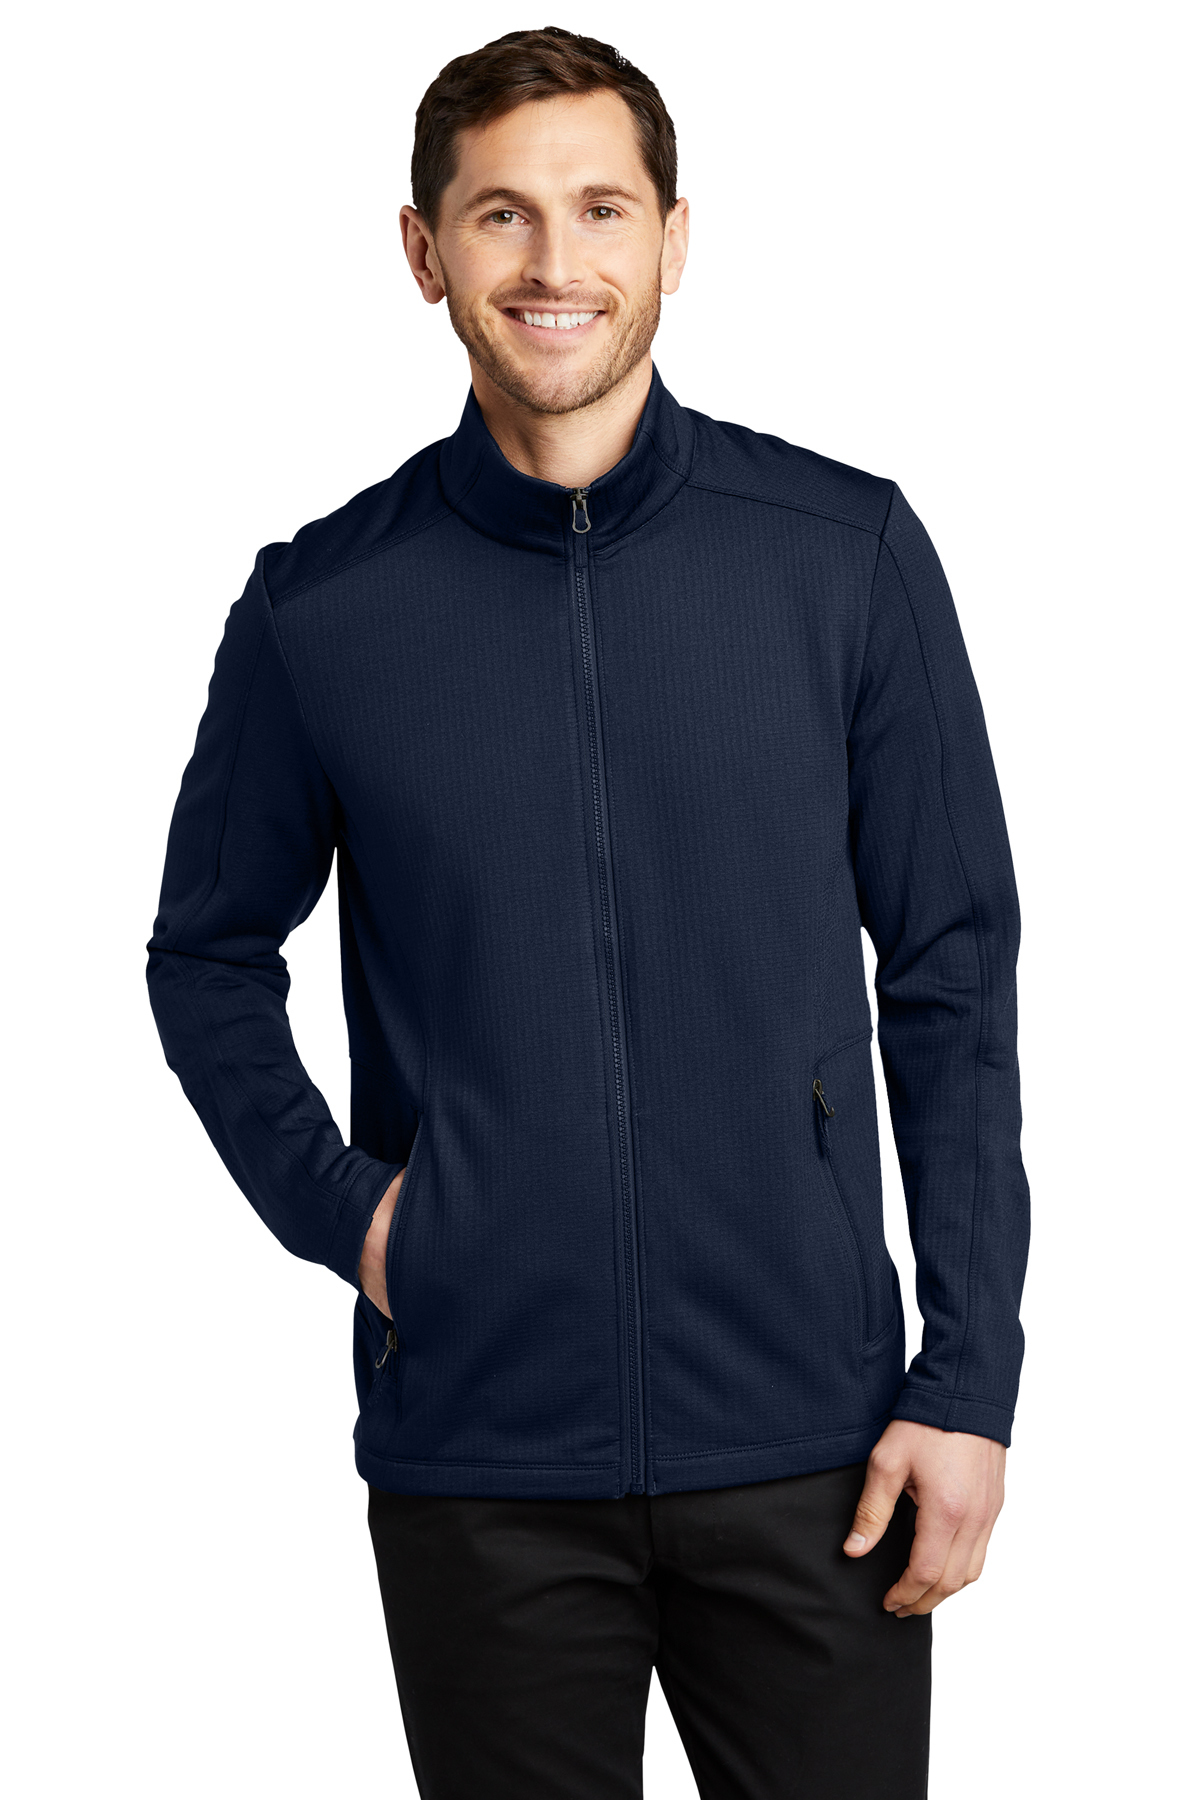 Port Authority Grid Fleece Jacket | Product | SanMar